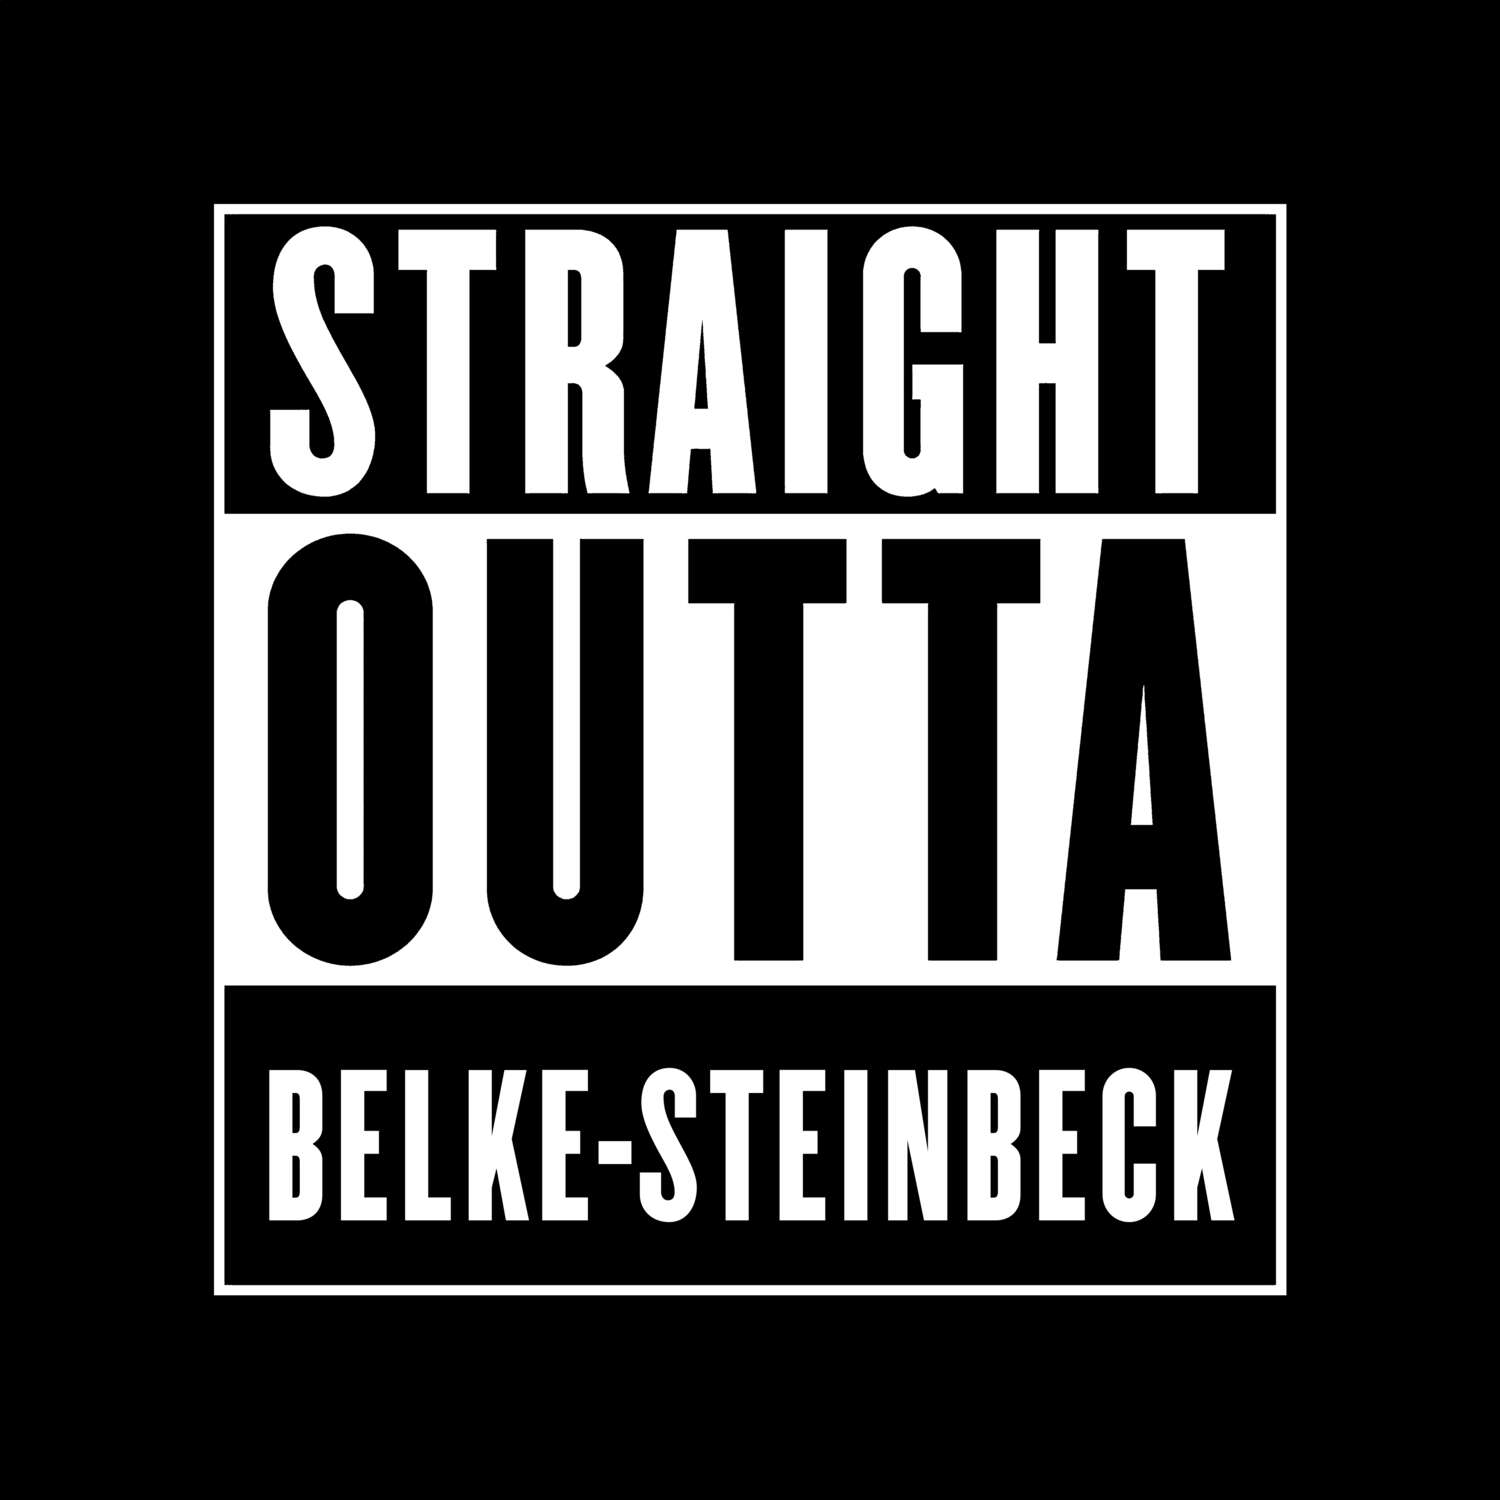 Belke-Steinbeck T-Shirt »Straight Outta«